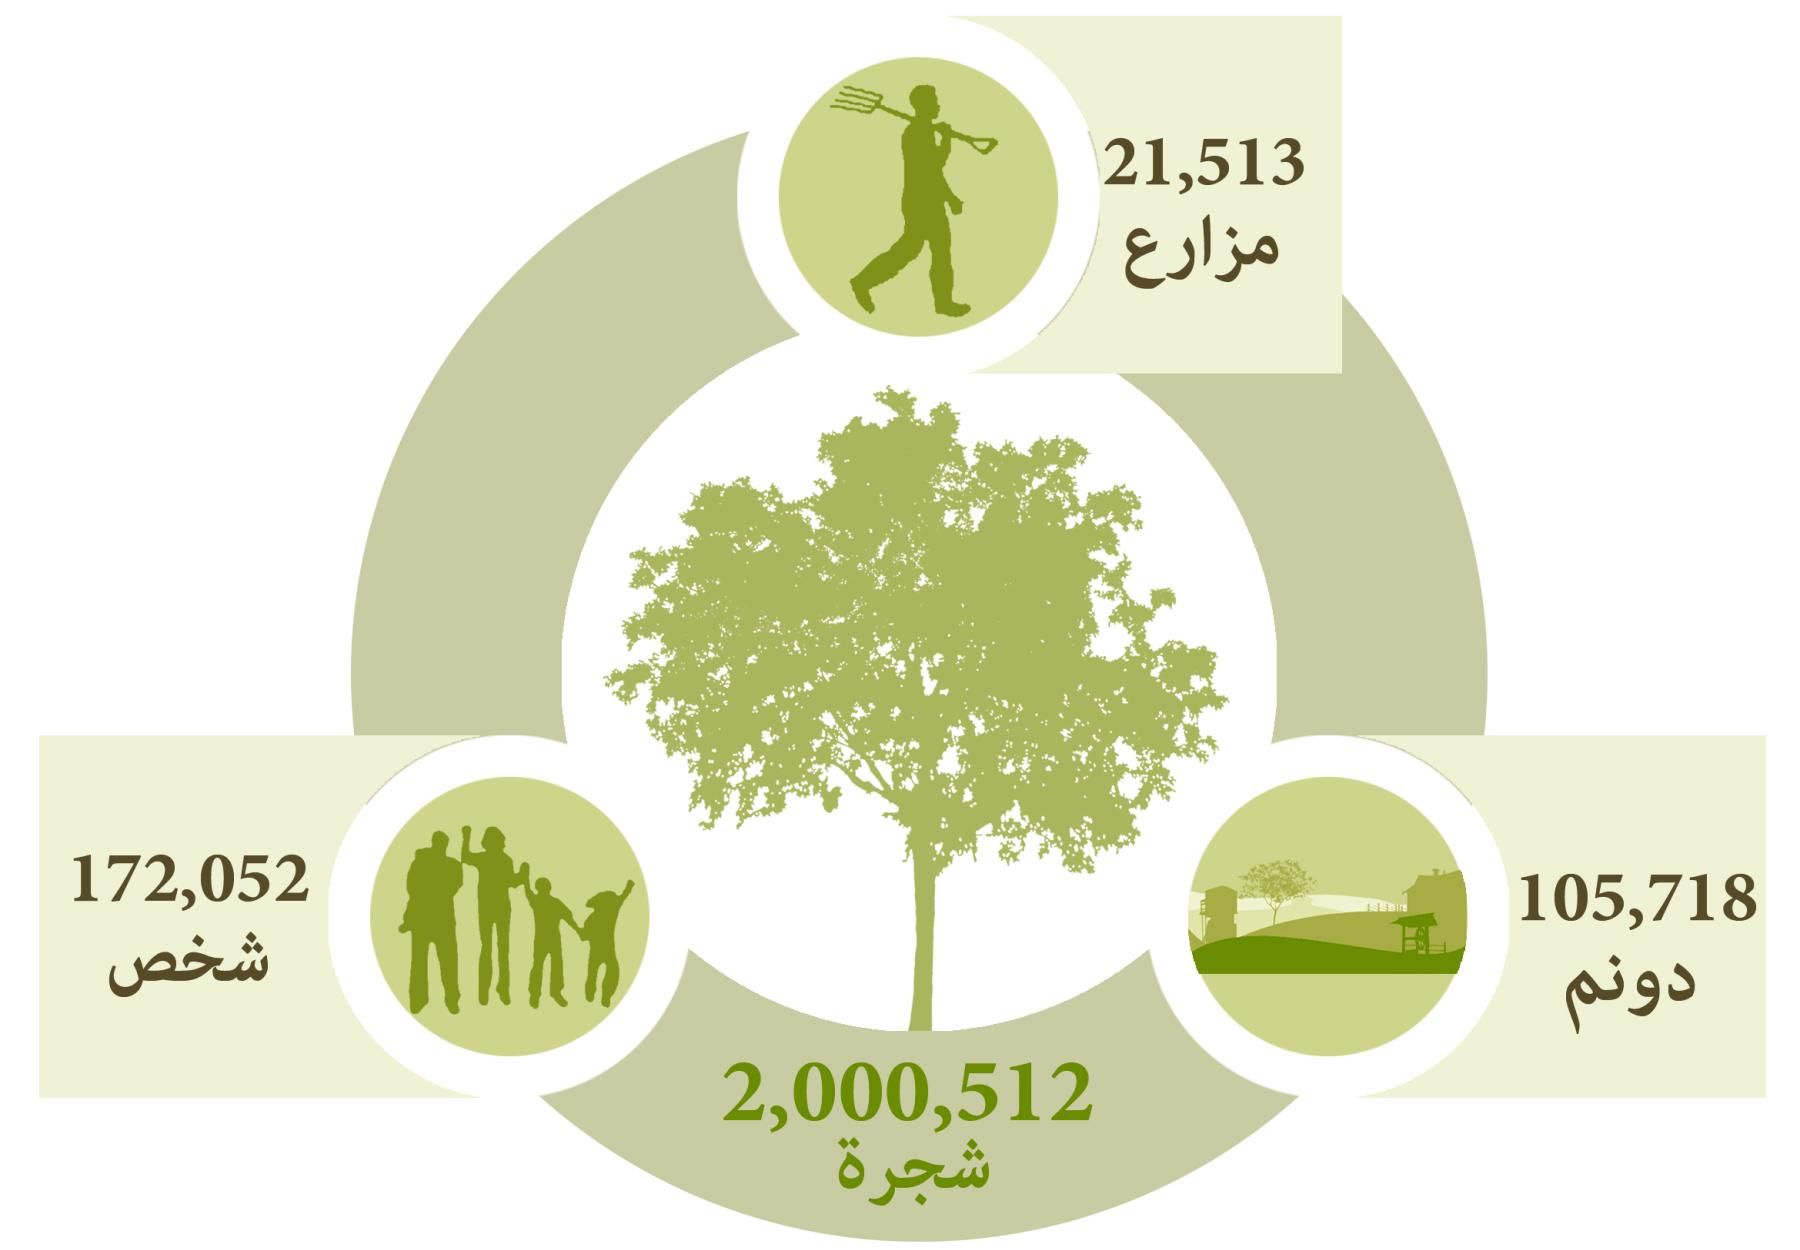 العربية لحماية الطبيعة تعقد مؤتمراً صحفياً لتطلق حملتها الثالثة لزراعة مليون شجرة جديدة في فلسطين